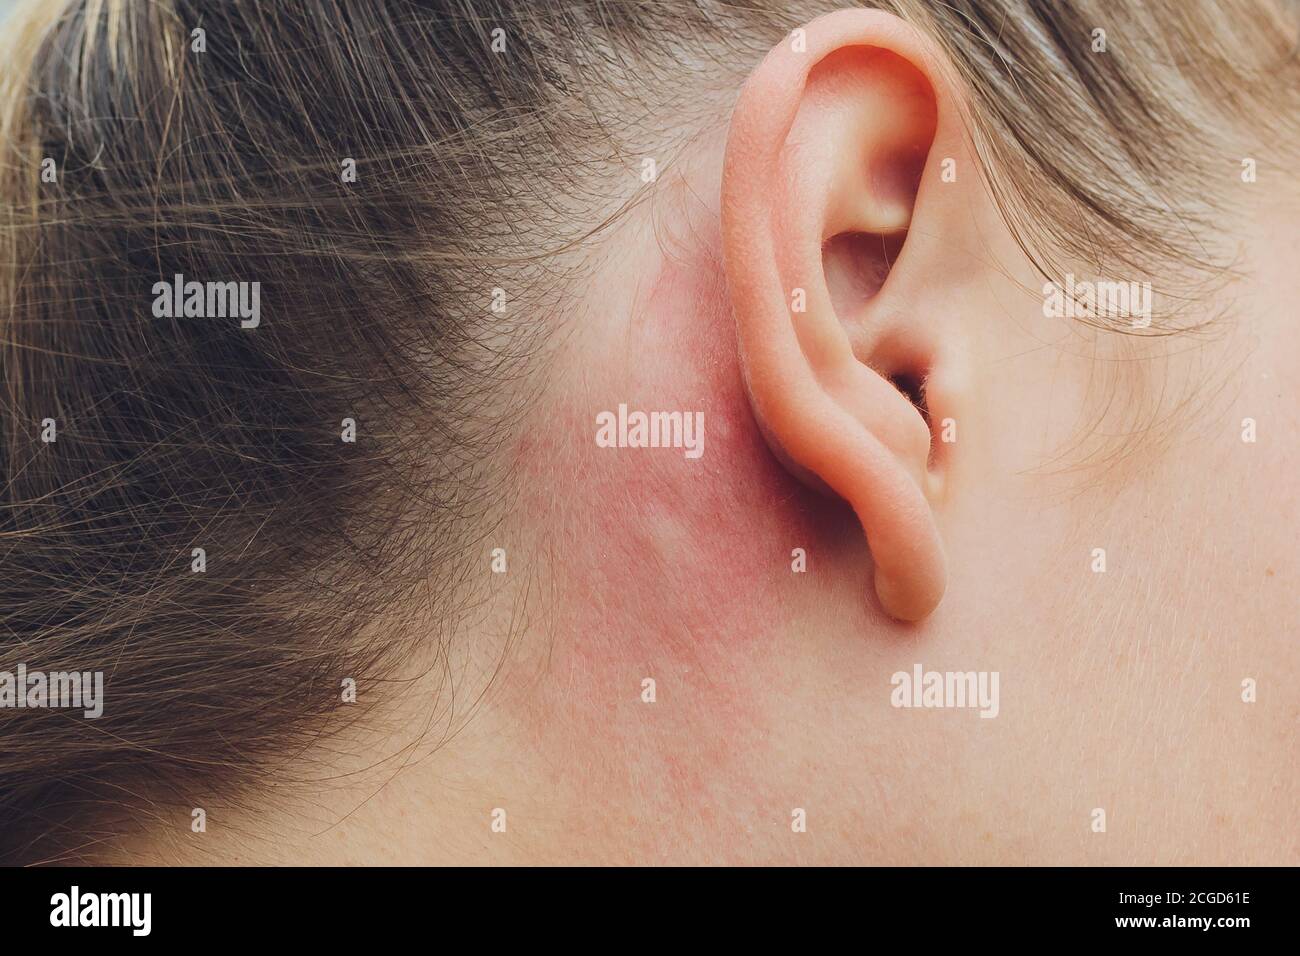 Allergische Hautreaktion auf den Mann hinter dem Ohr durch Insekten  verursacht staphylinidae, Verbrennungen auf der Haut Stockfotografie - Alamy